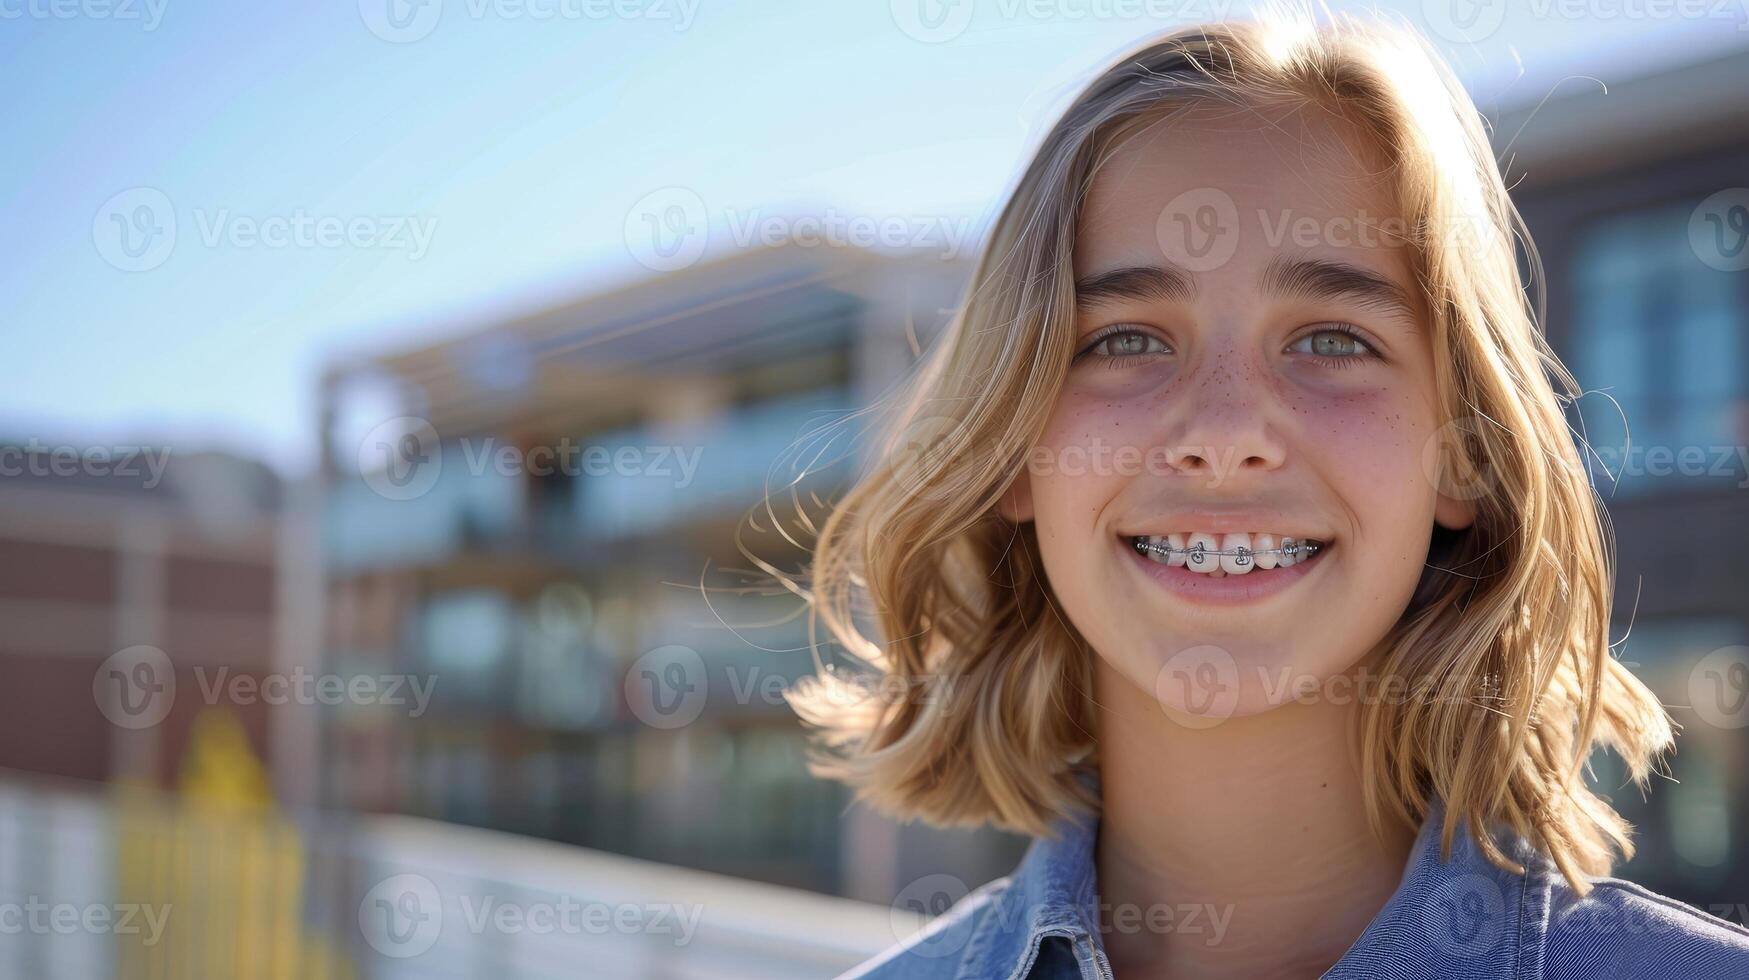 Hosenträger auf Zähne schön rot Lippen und Weiß Zähne mit Metall Zahnspange. ein Mädchen lächeln. foto